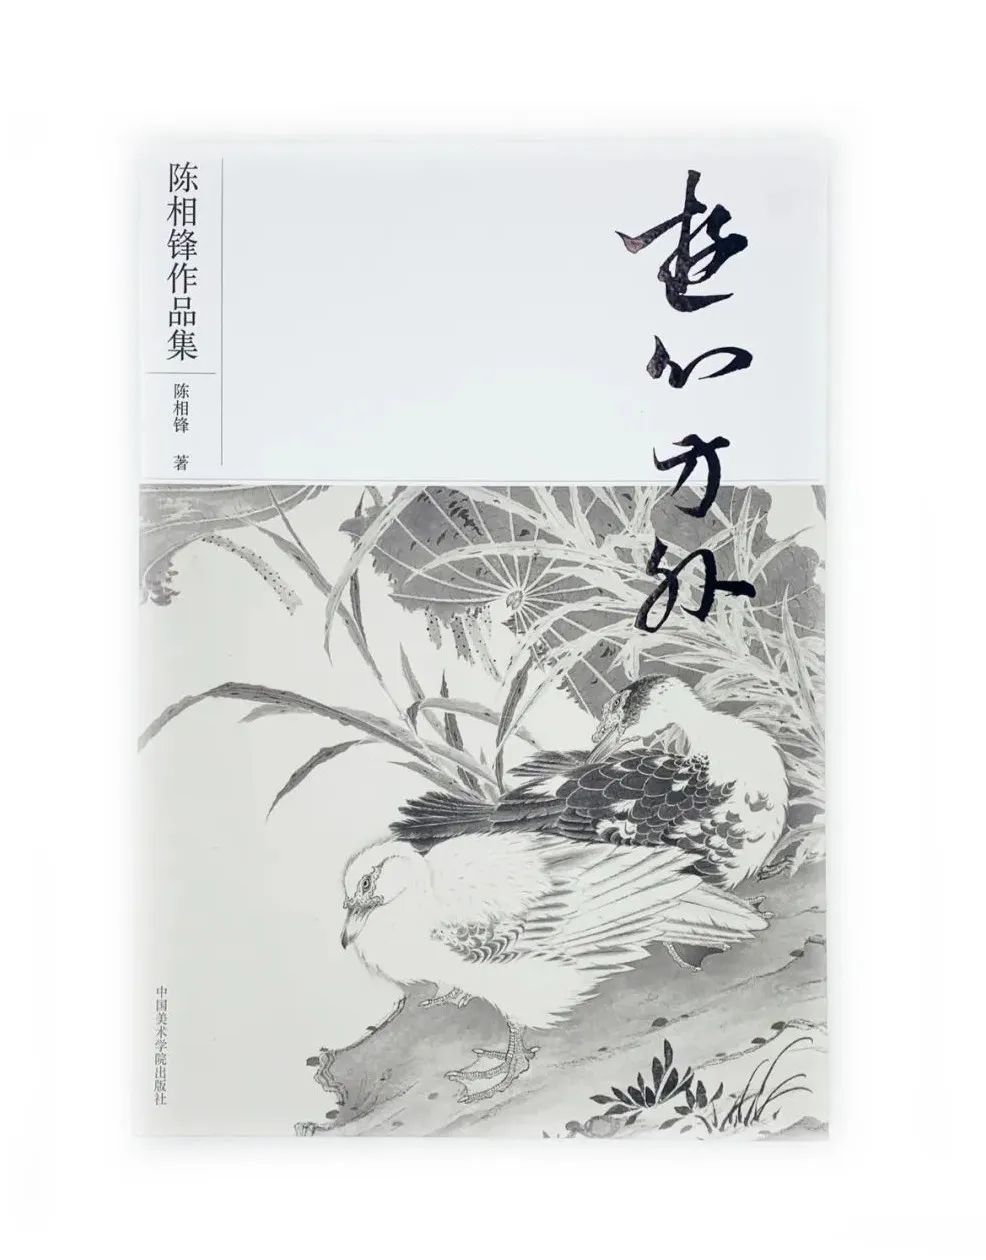 十年磨一剑，著名画家陈相锋高清作品集《游心方外》正式出版